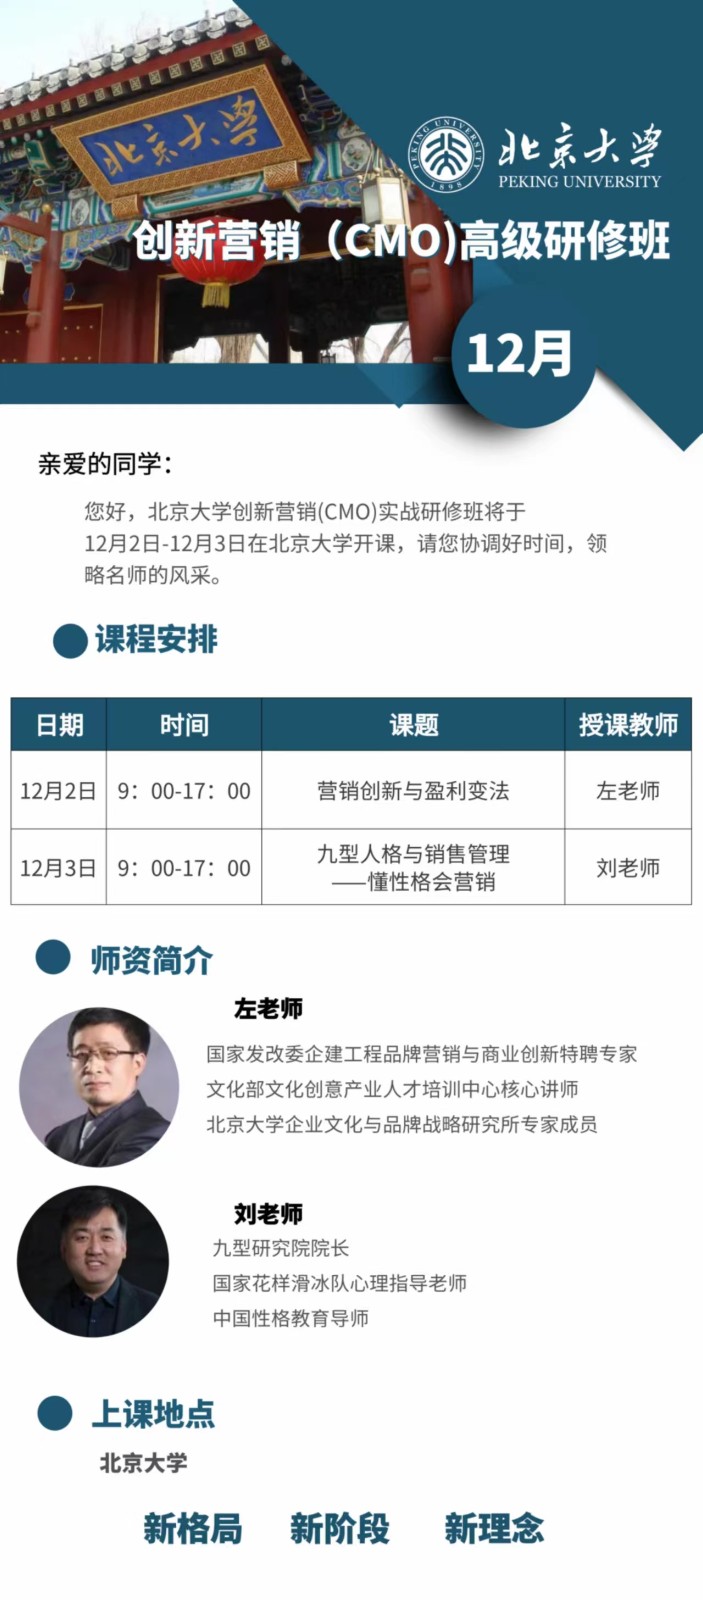 北京大学创新营销(CMO)高级研修班 12月课程安排_营销创新与盈利变法_九型人格与销售管理